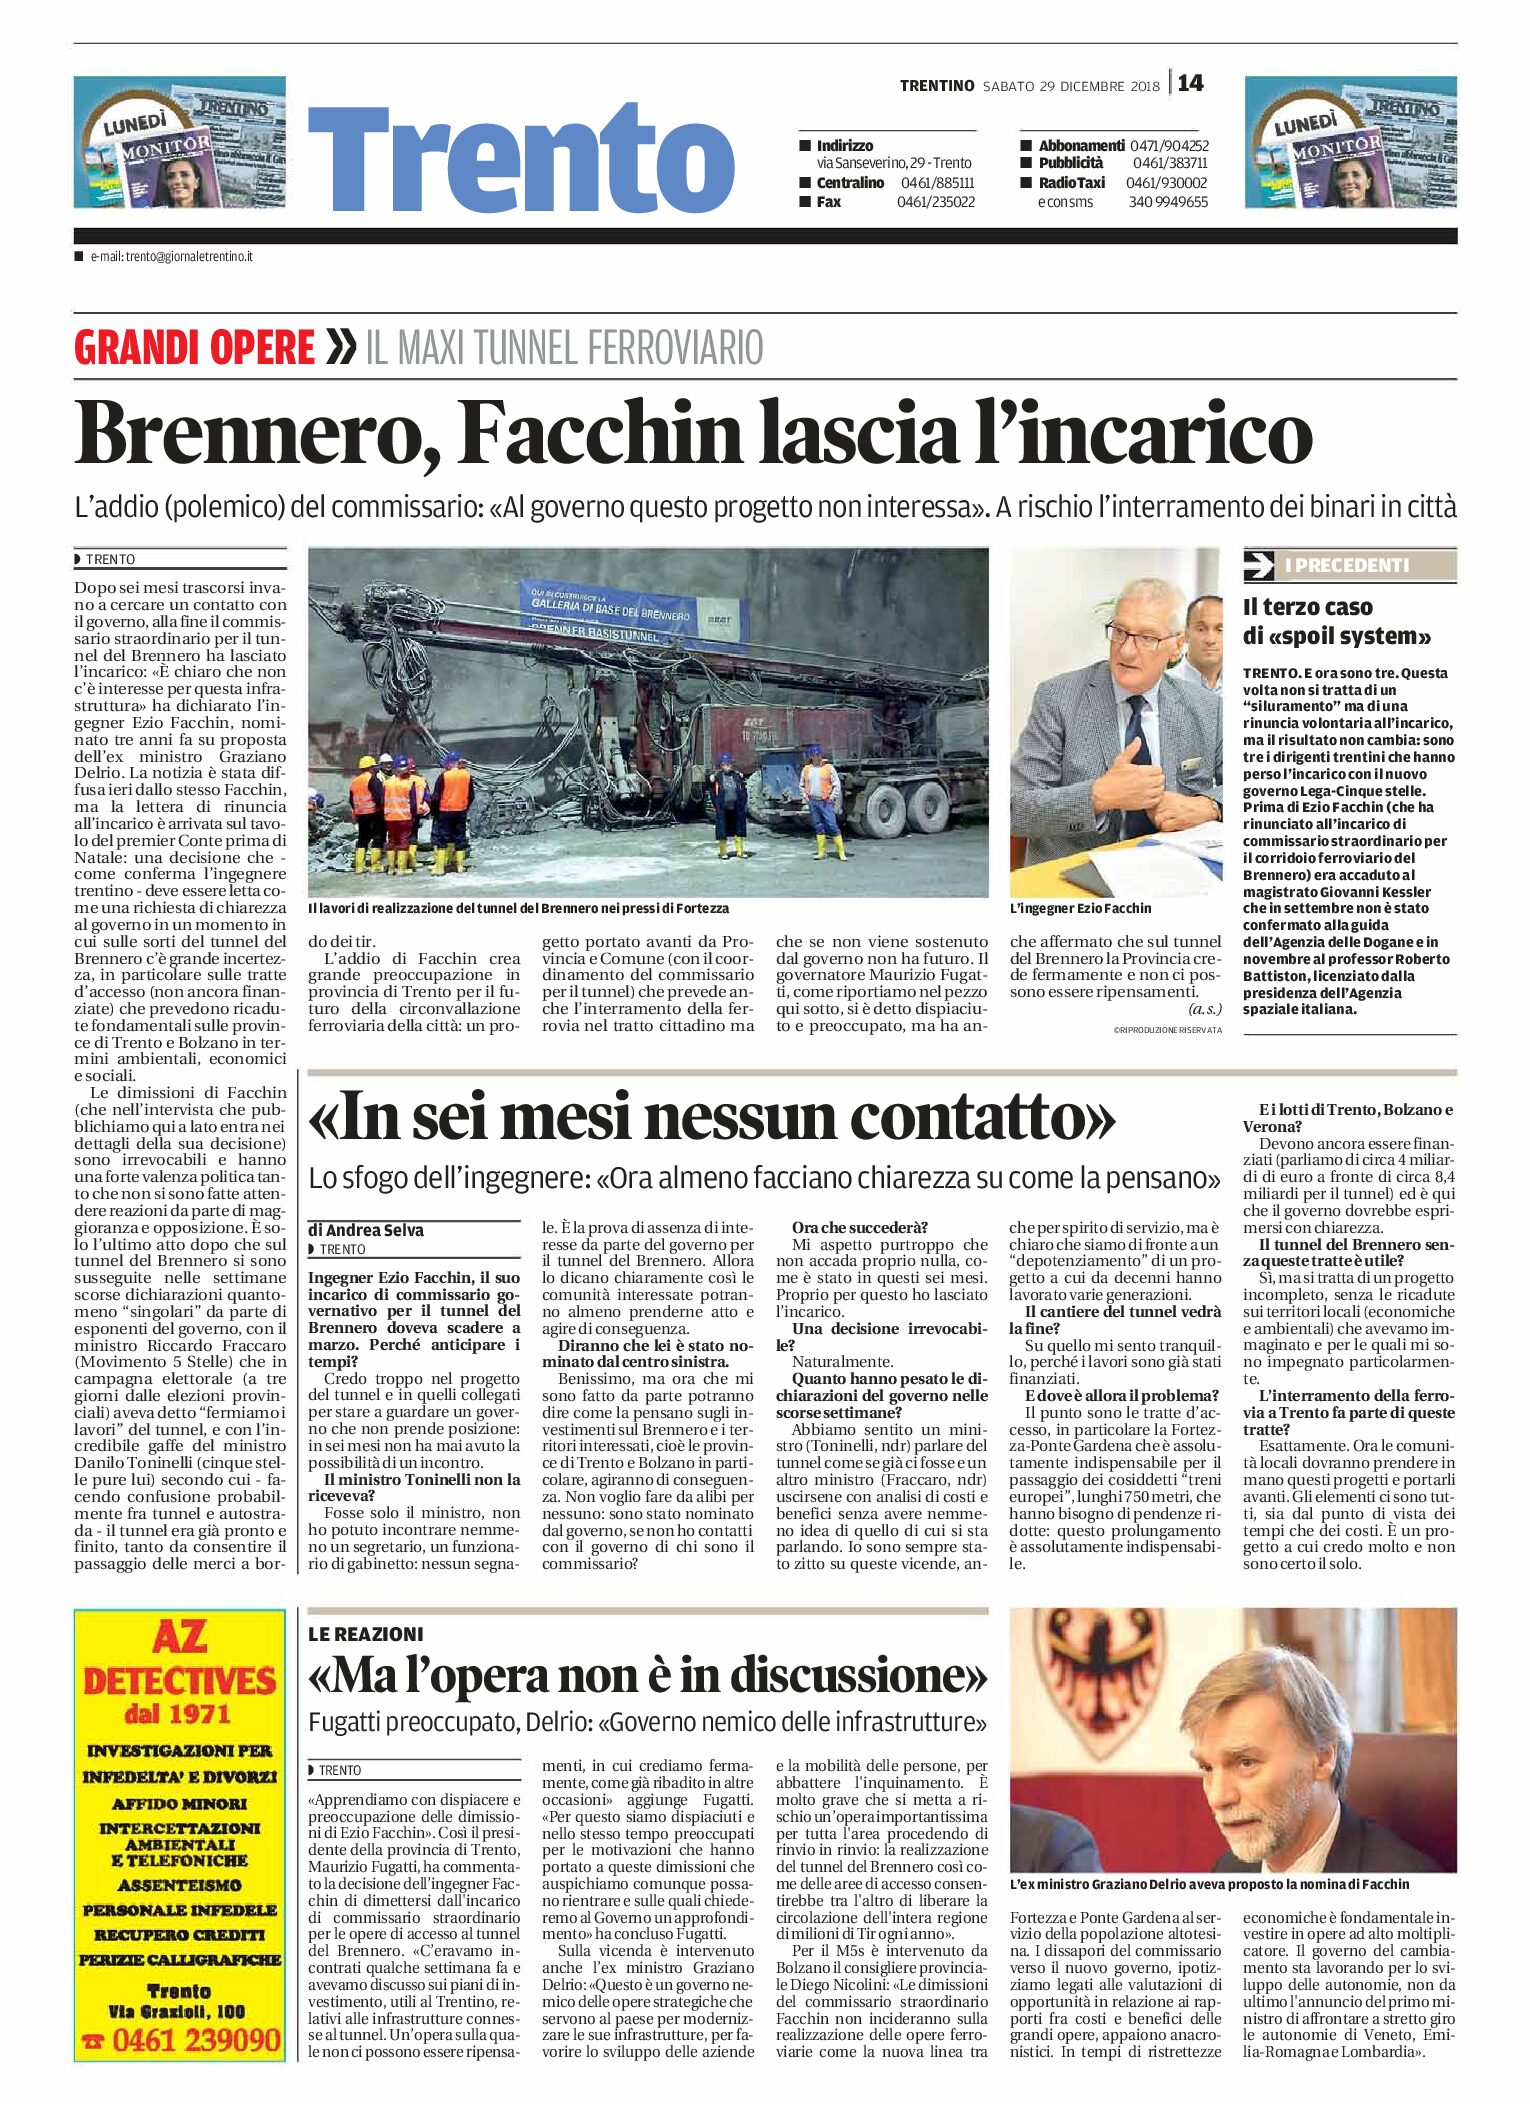 Trento, Brennero: Facchin lascia l’incarico